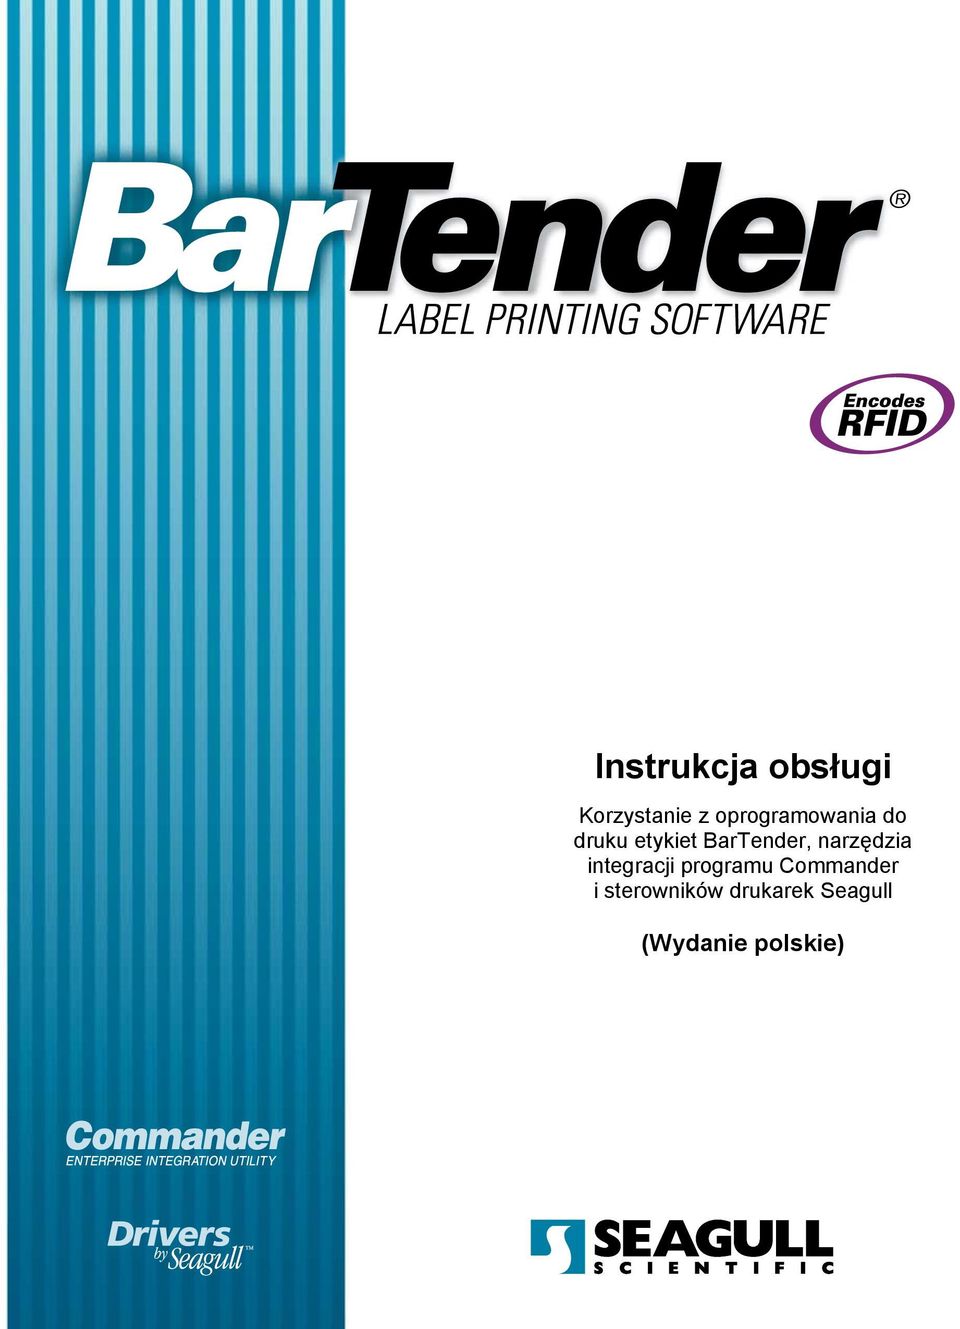 BarTender, narzędzia integracji programu